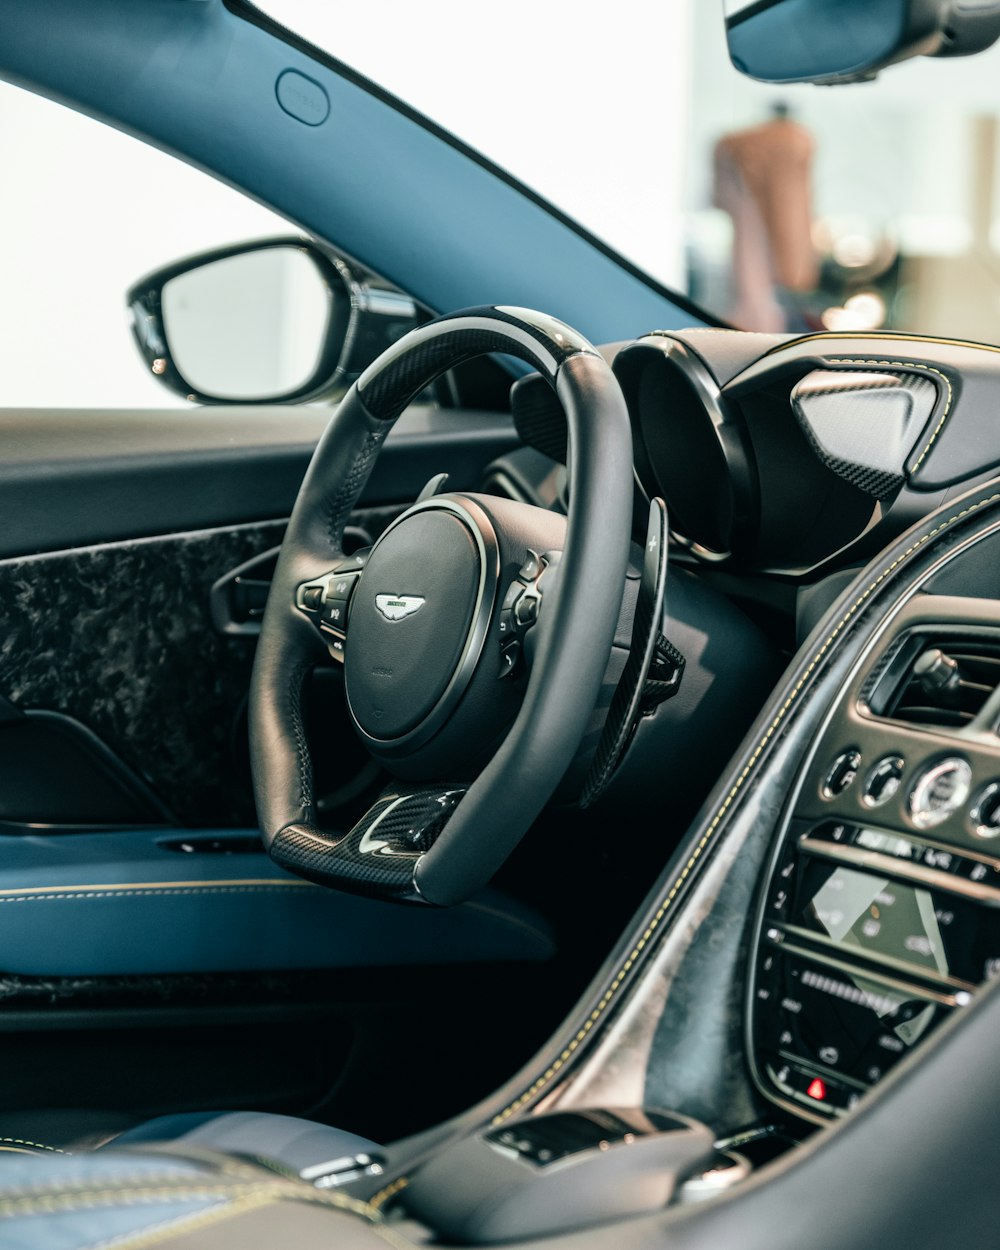 Aston Martin vehicle interior